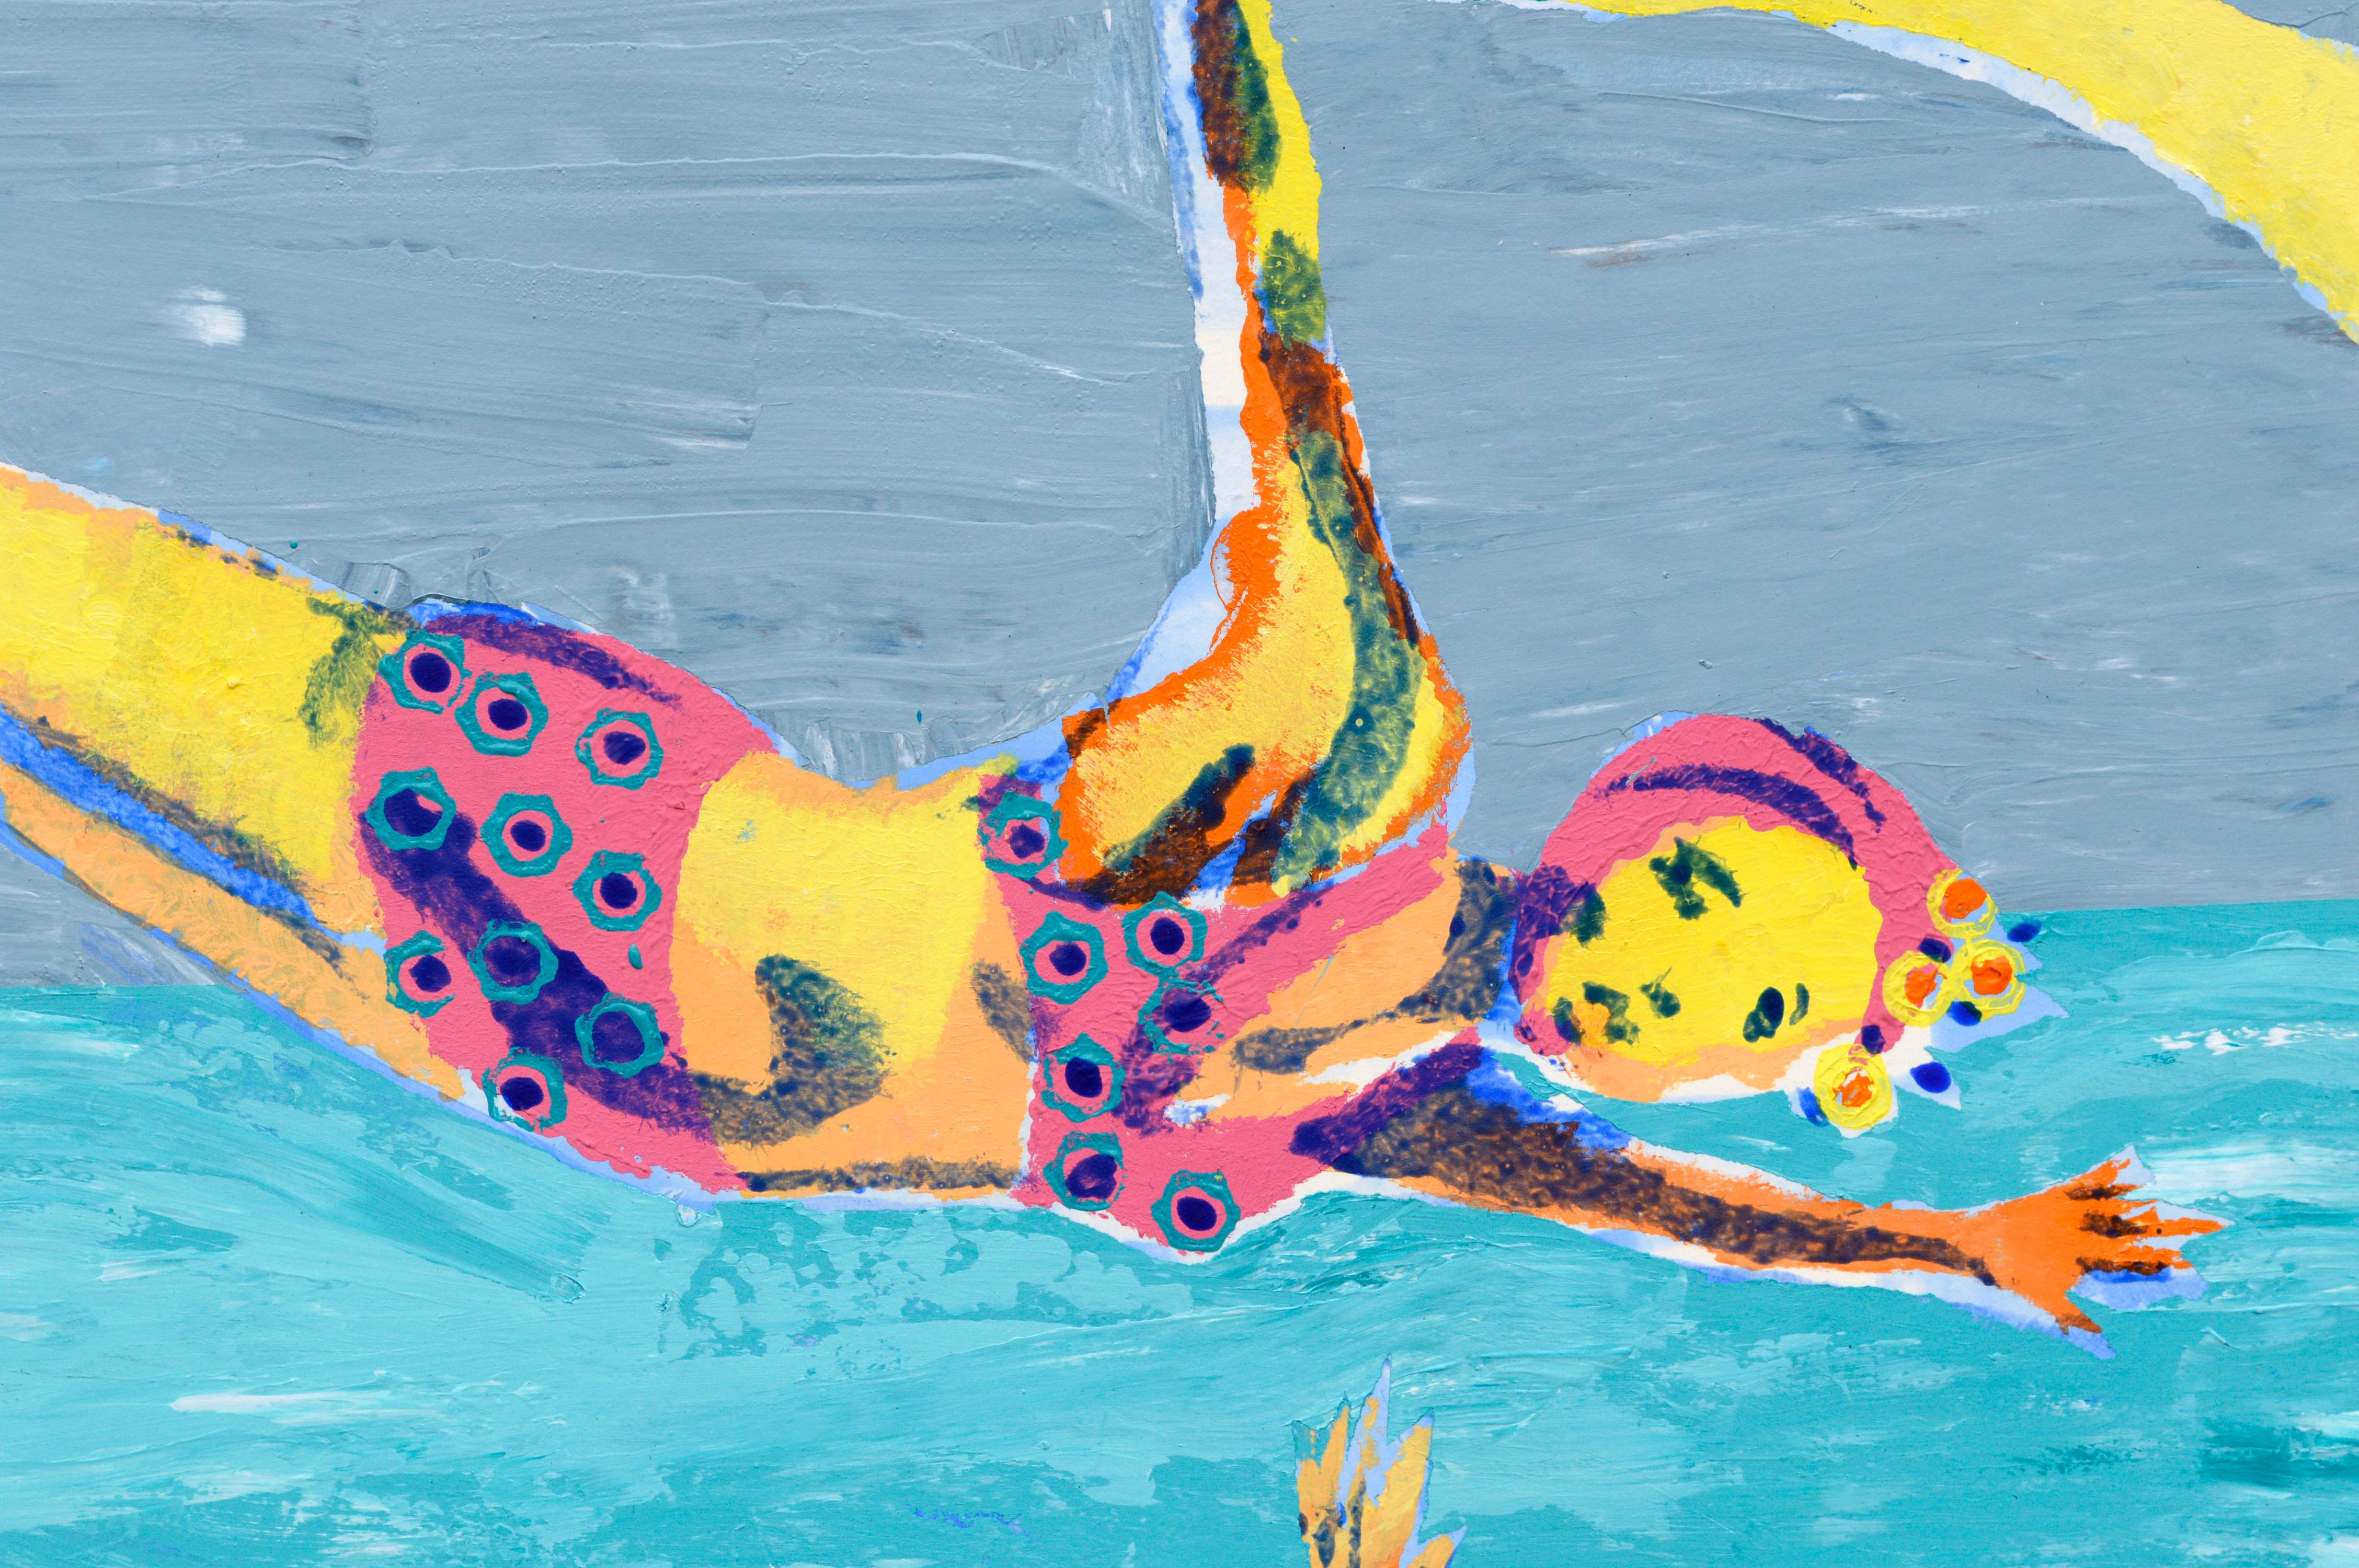 Bunte Schwimmer, zeitgenössische figurative Pop Art in Blau

Kühnes und leuchtendes Pop-Art-Gemälde von im Wasser tauchenden Schwimmern von Marc Foster Grant (Amerikaner, geb. 1947), 2009. Die Figur der Schwimmerin in Tauchpose wird wie ein Muster